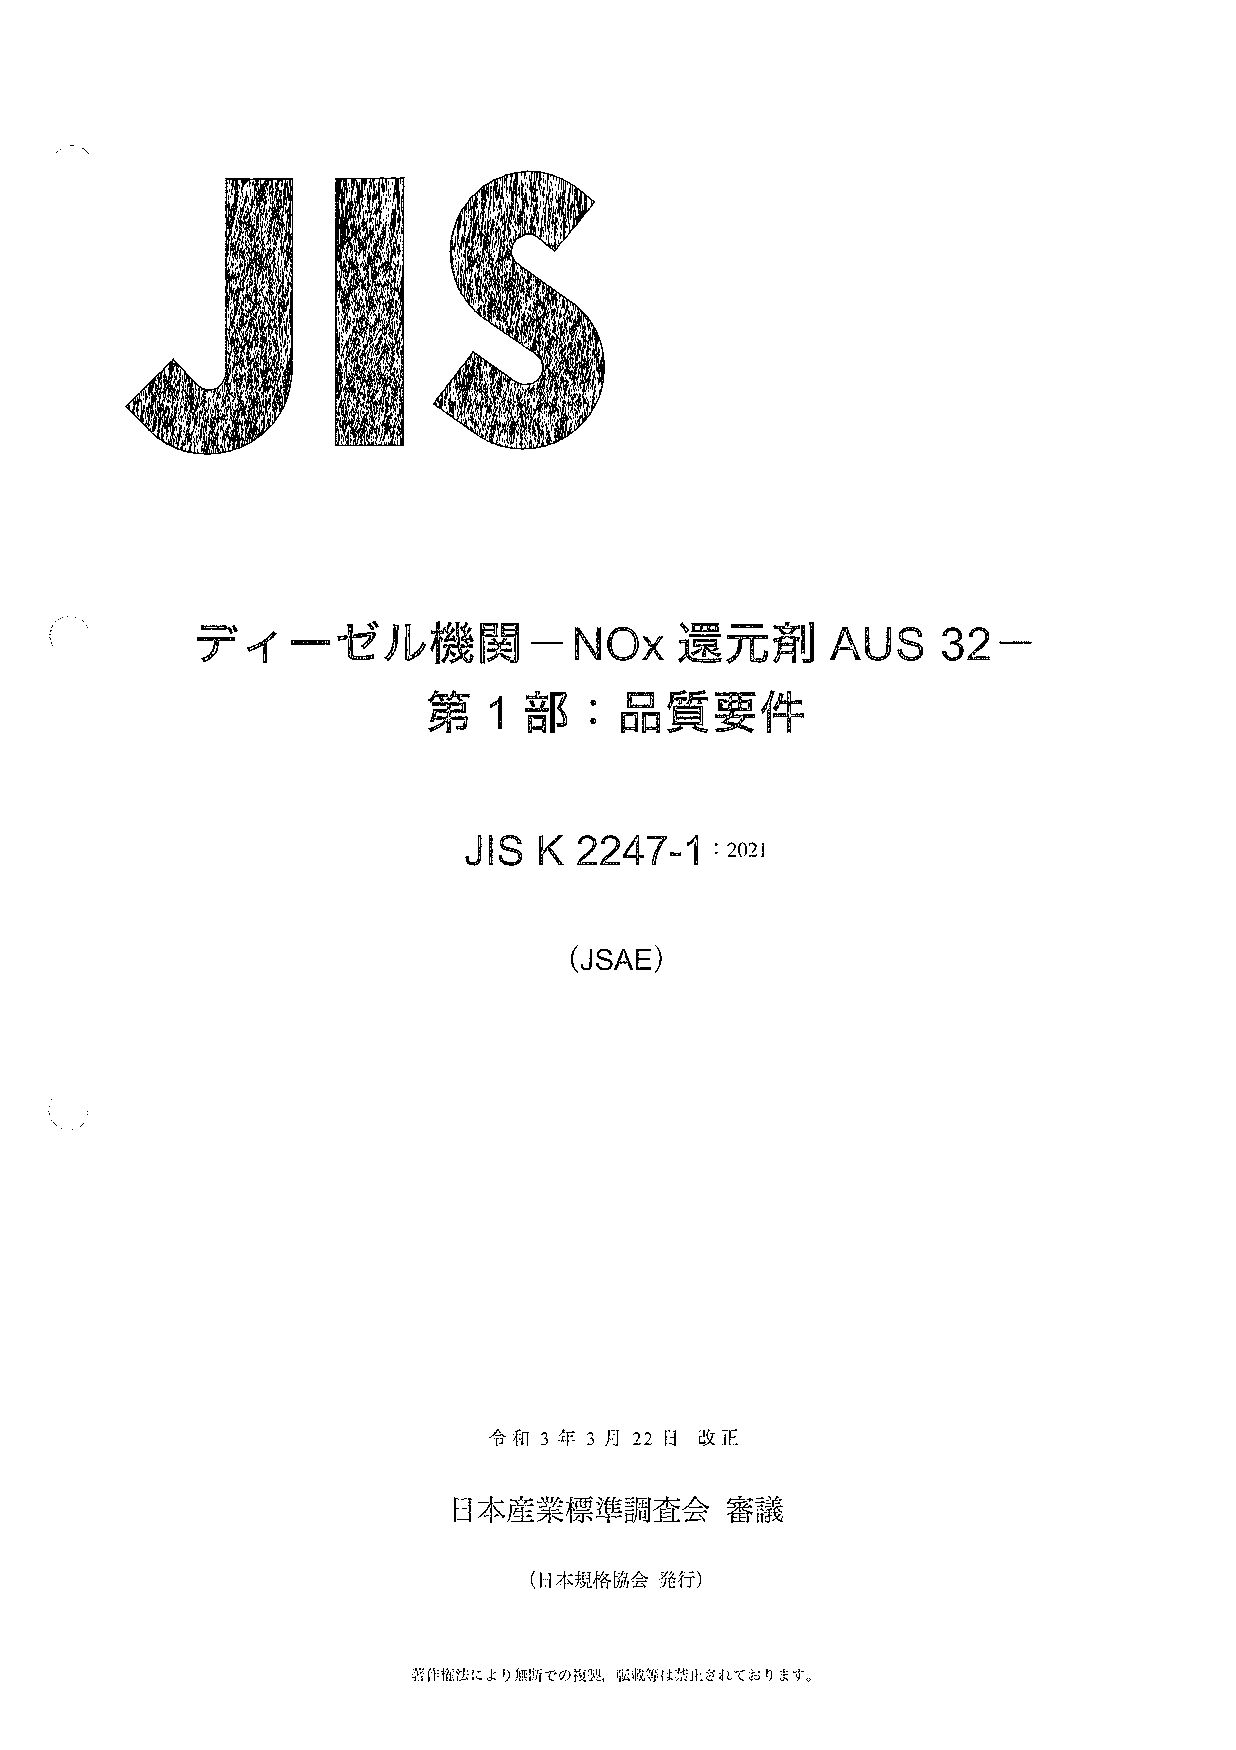 JIS K 2247-1:2021